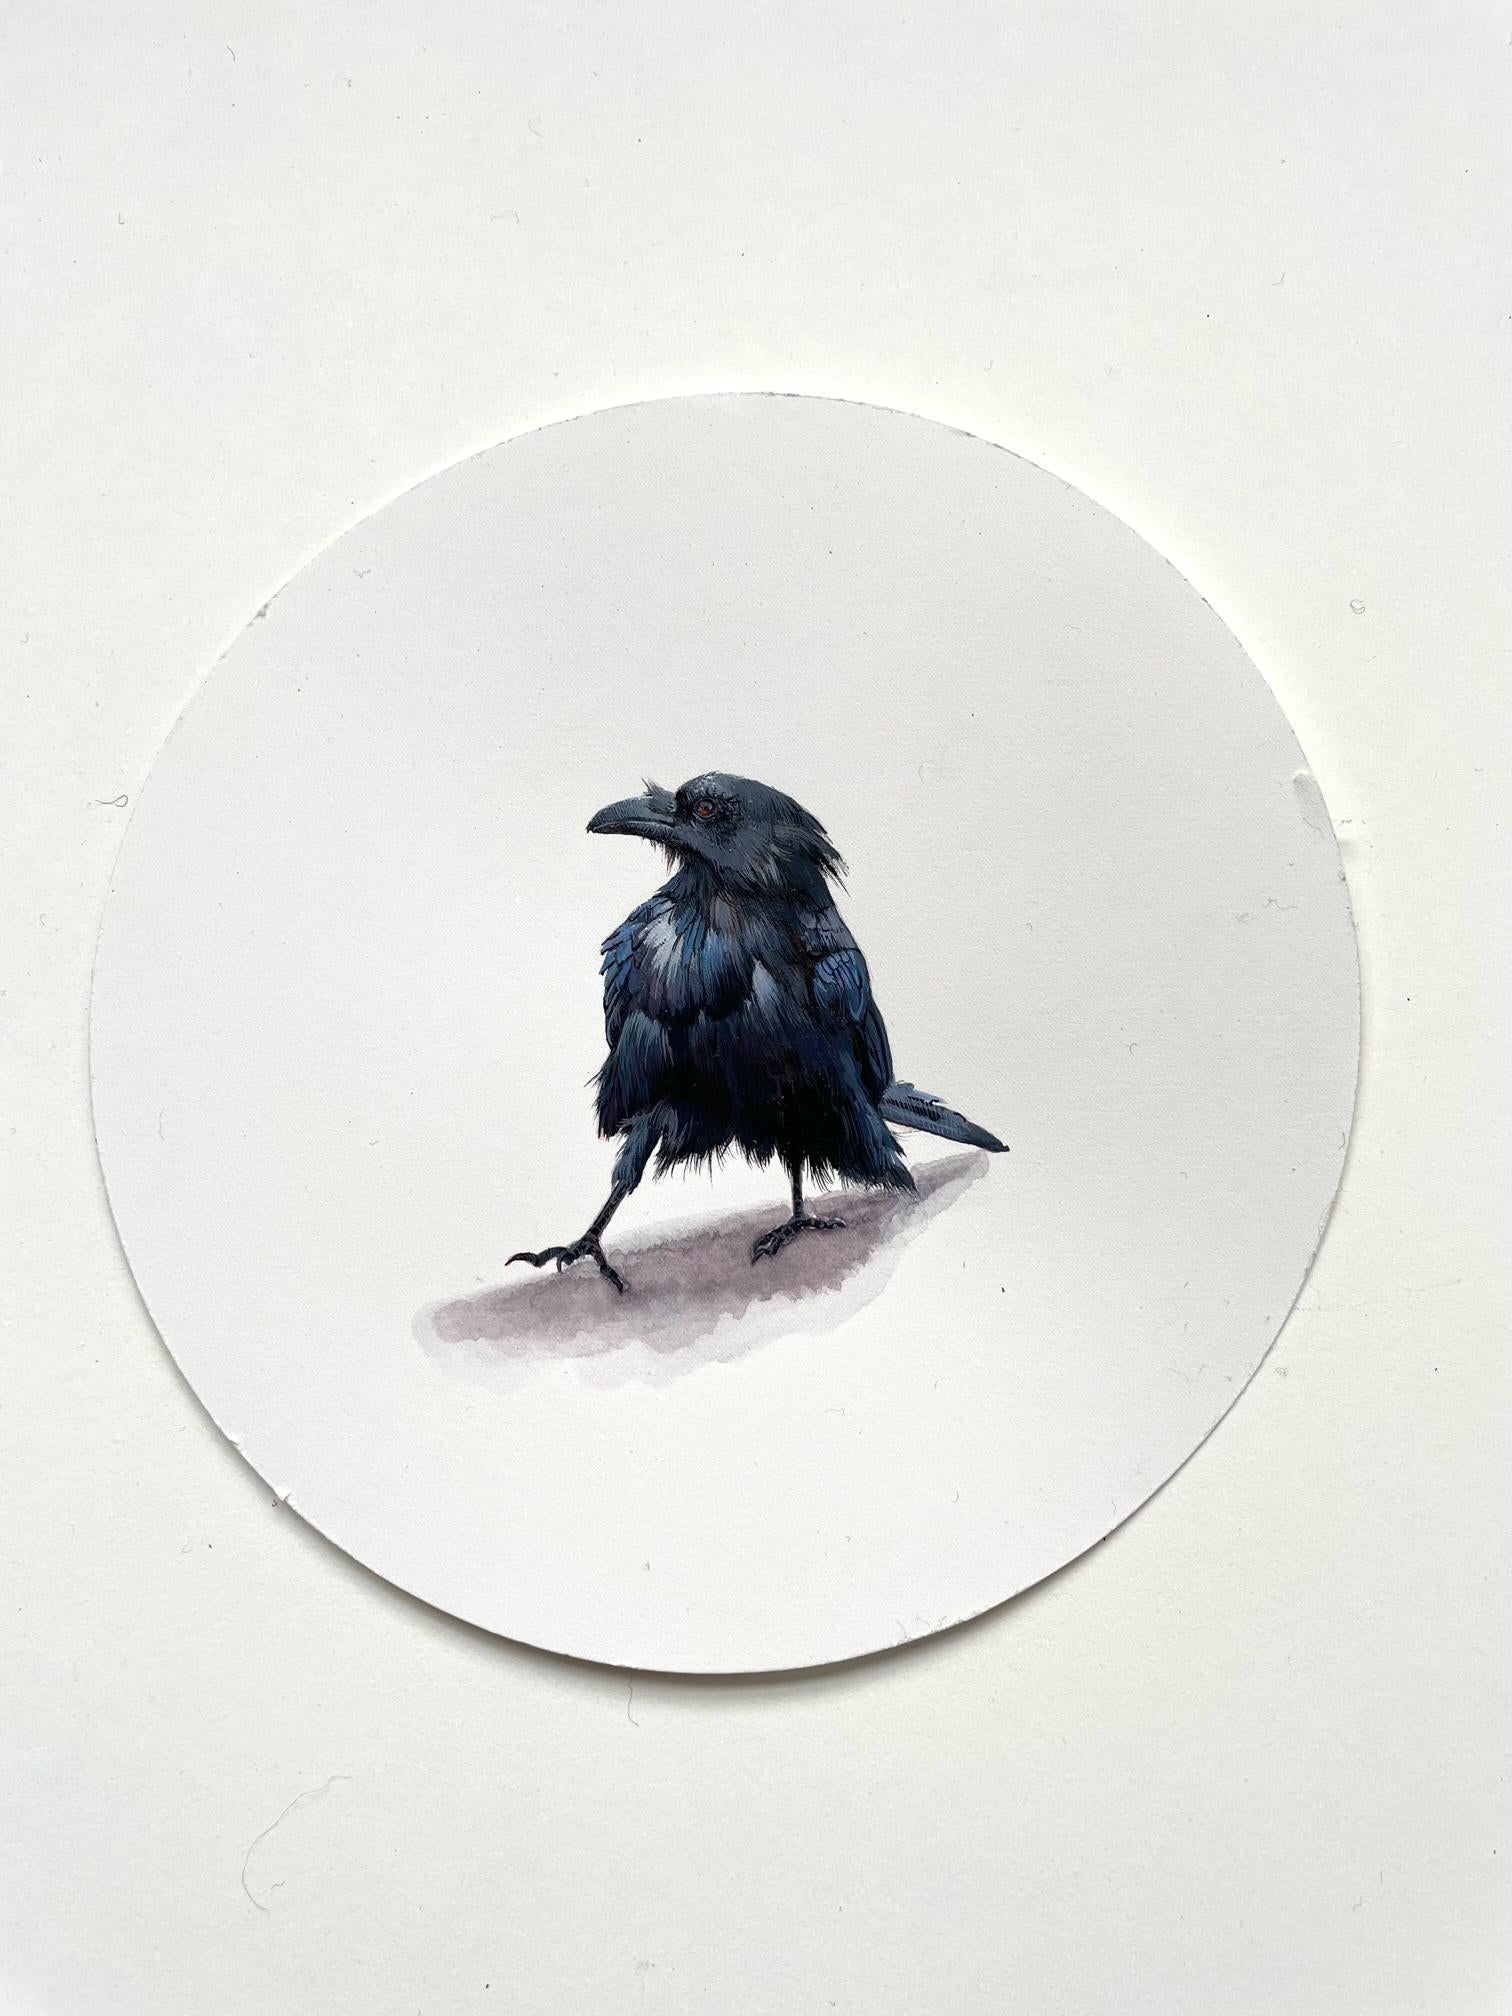 Dina Brodsky Animal Art – Rabe 1, realistische Gouache auf Papier Miniatur-Vogelporträt, 2023